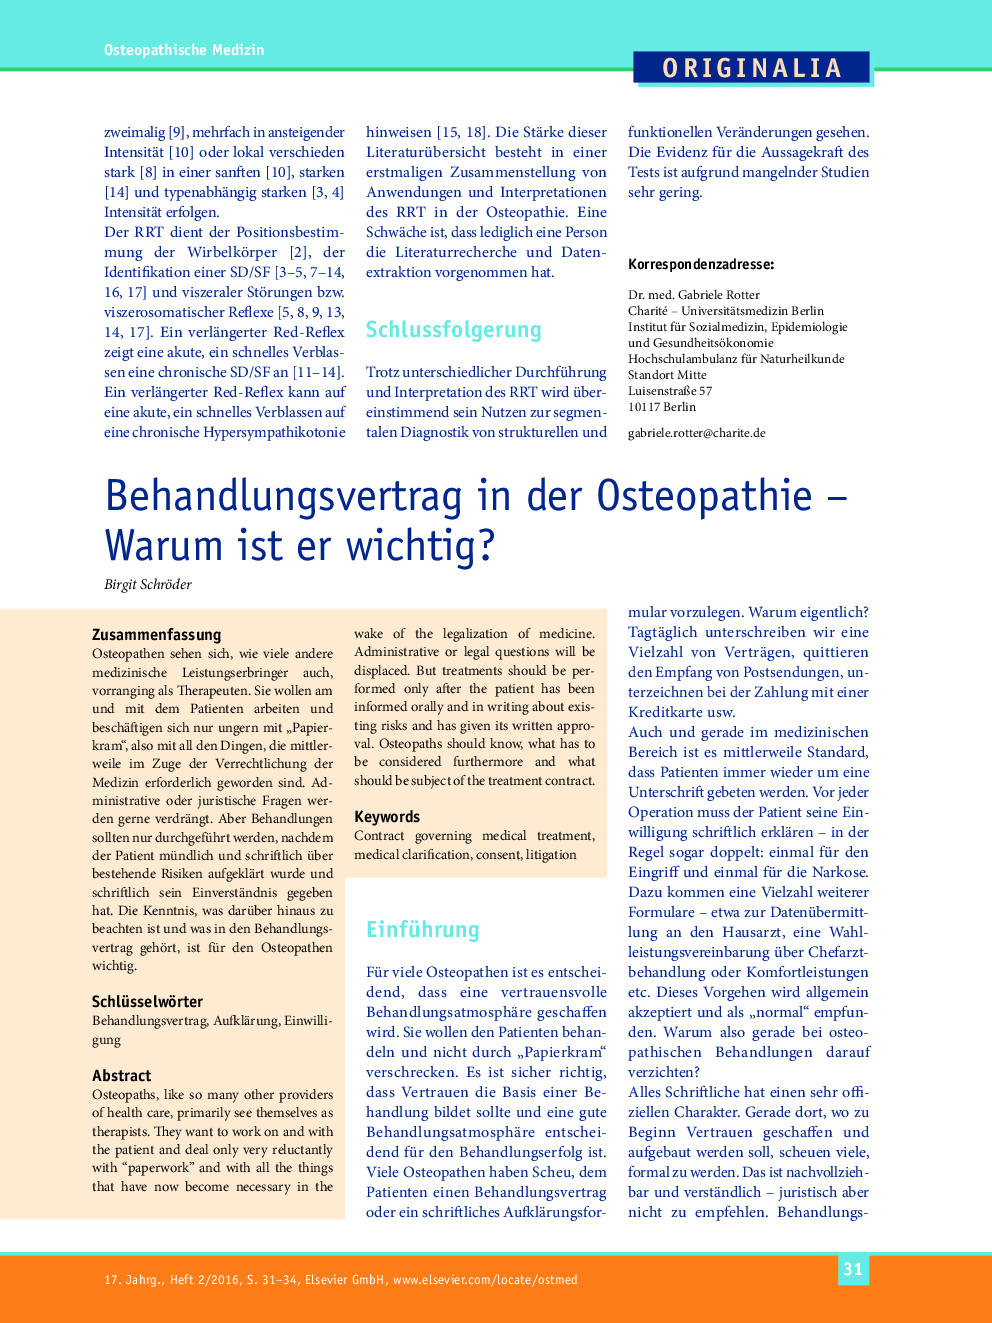 Behandlungsvertrag in der Osteopathie – Warum ist er wichtig?